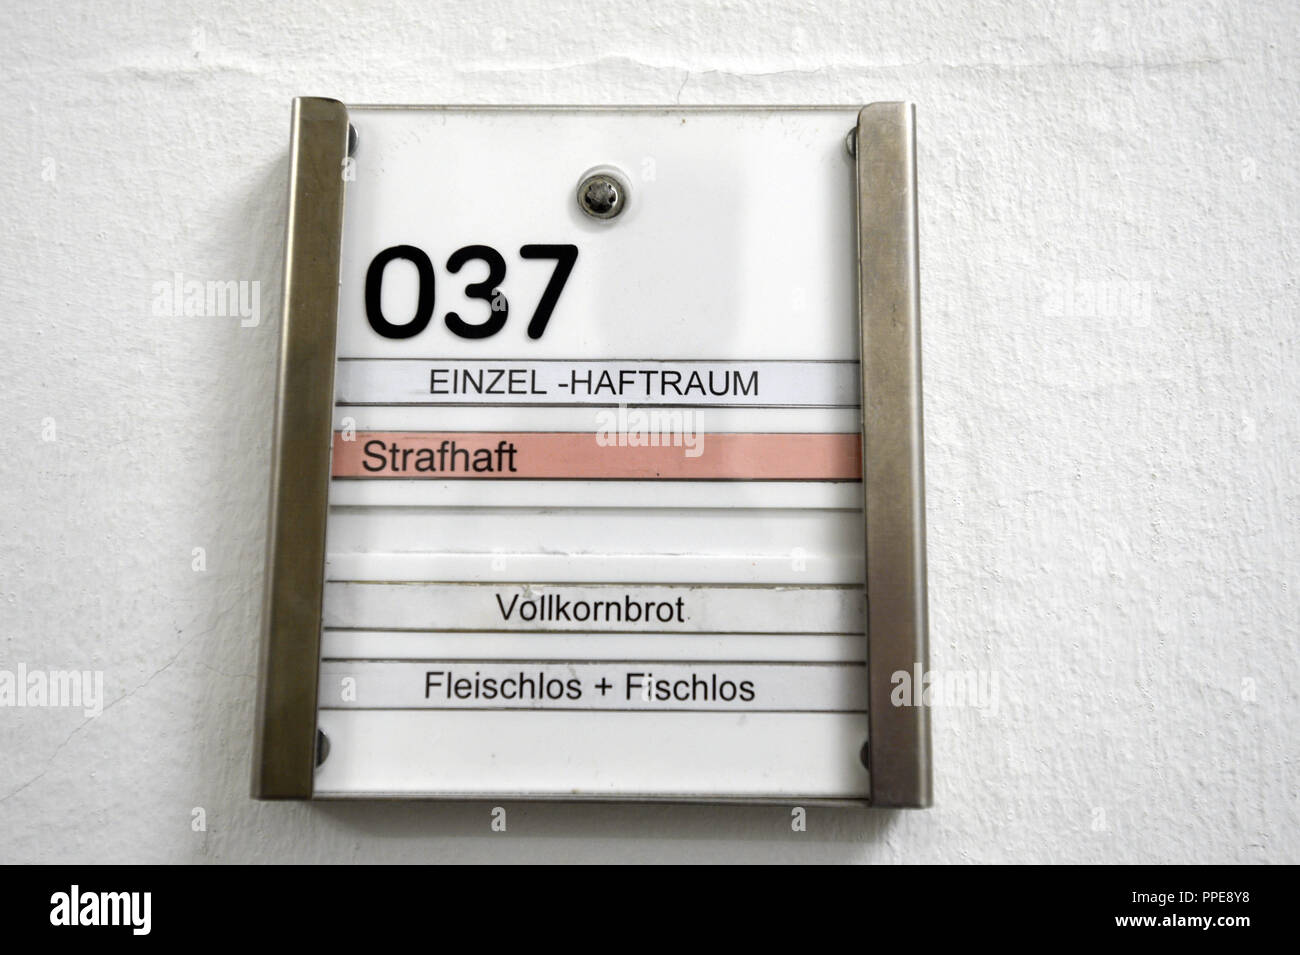 À la porte d'une cellule de prison dans la prison de Stadelheim à Munich un signe donne des informations au sujet d'un détenu et de ses habitudes alimentaires : pain complet, sans poissons et sans viande. Banque D'Images